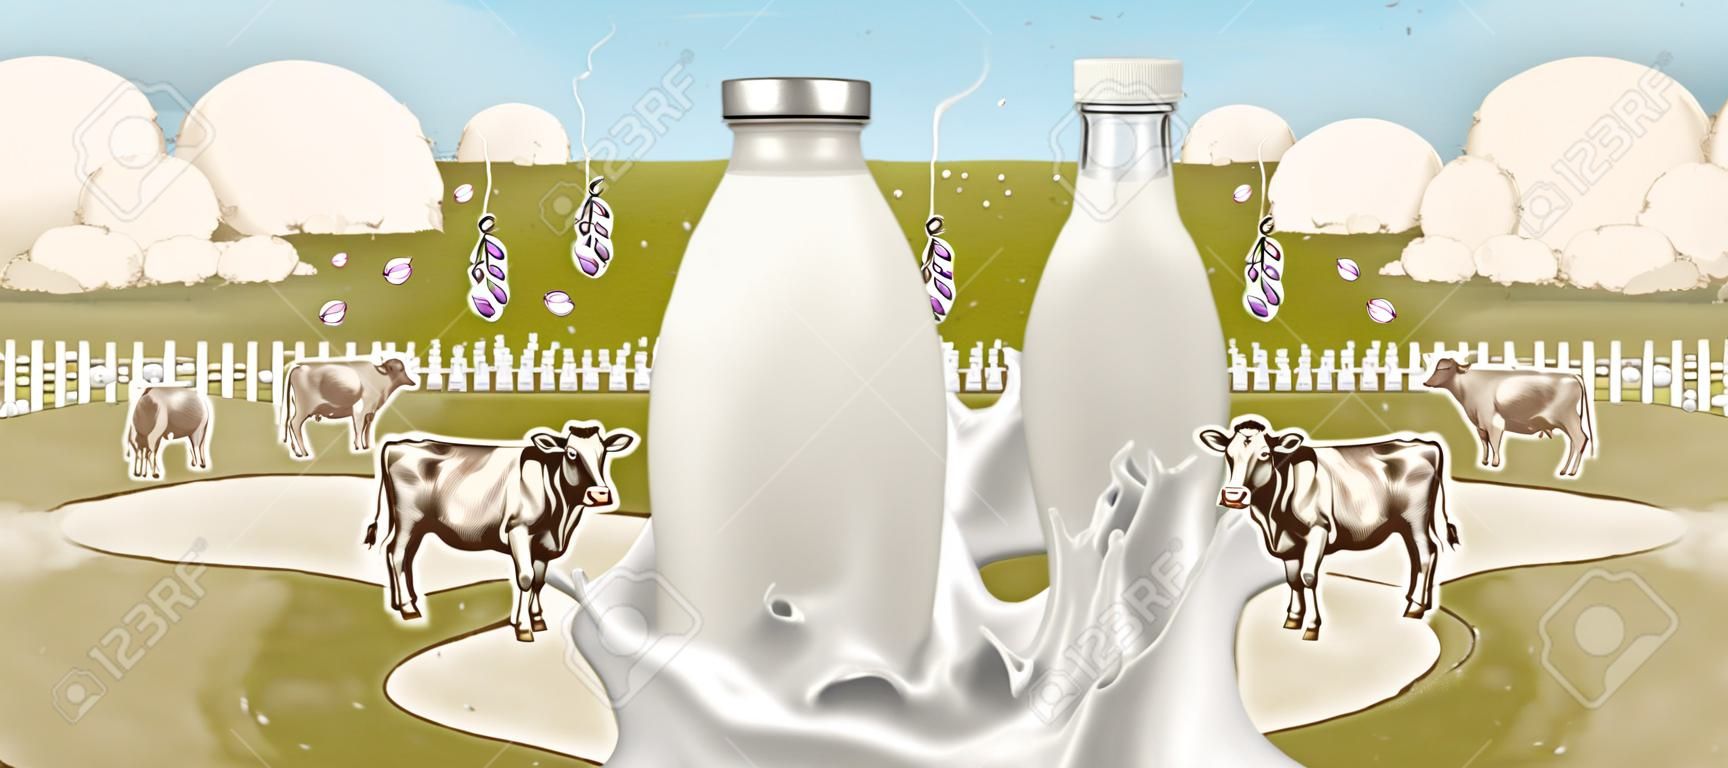 Farm frische Milch mit Spritzflüssigkeit in der 3D-Illustration auf graviertem Ackerlandhintergrund, leere Glasflasche